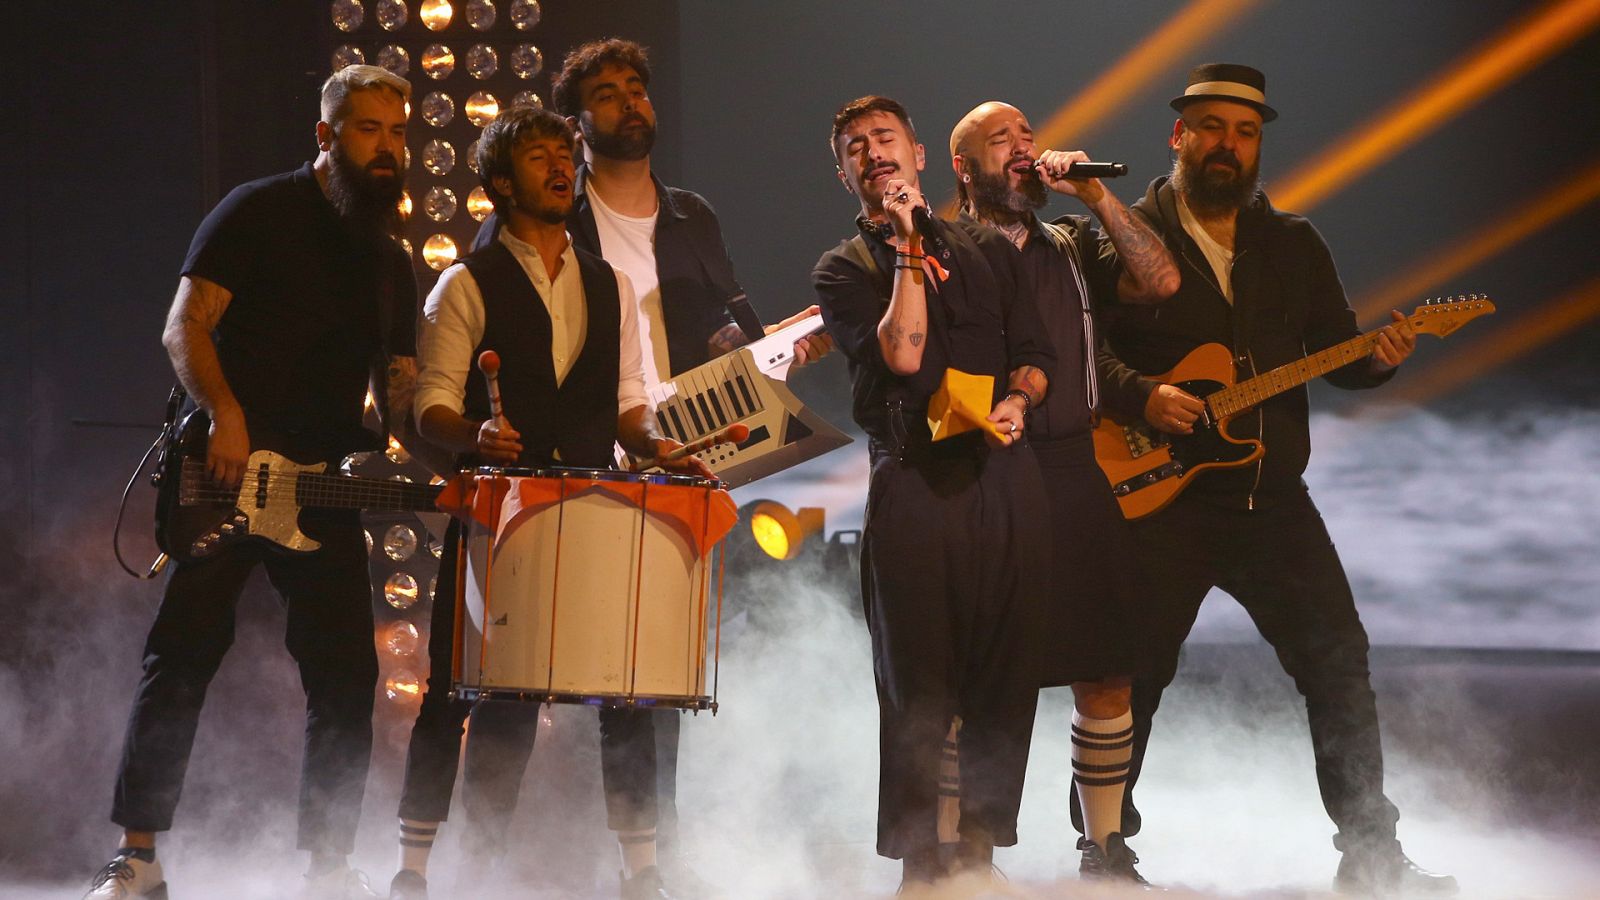 Benidorm Fest - Rayden canta "Calle de la llorería" en la segunda semifinal